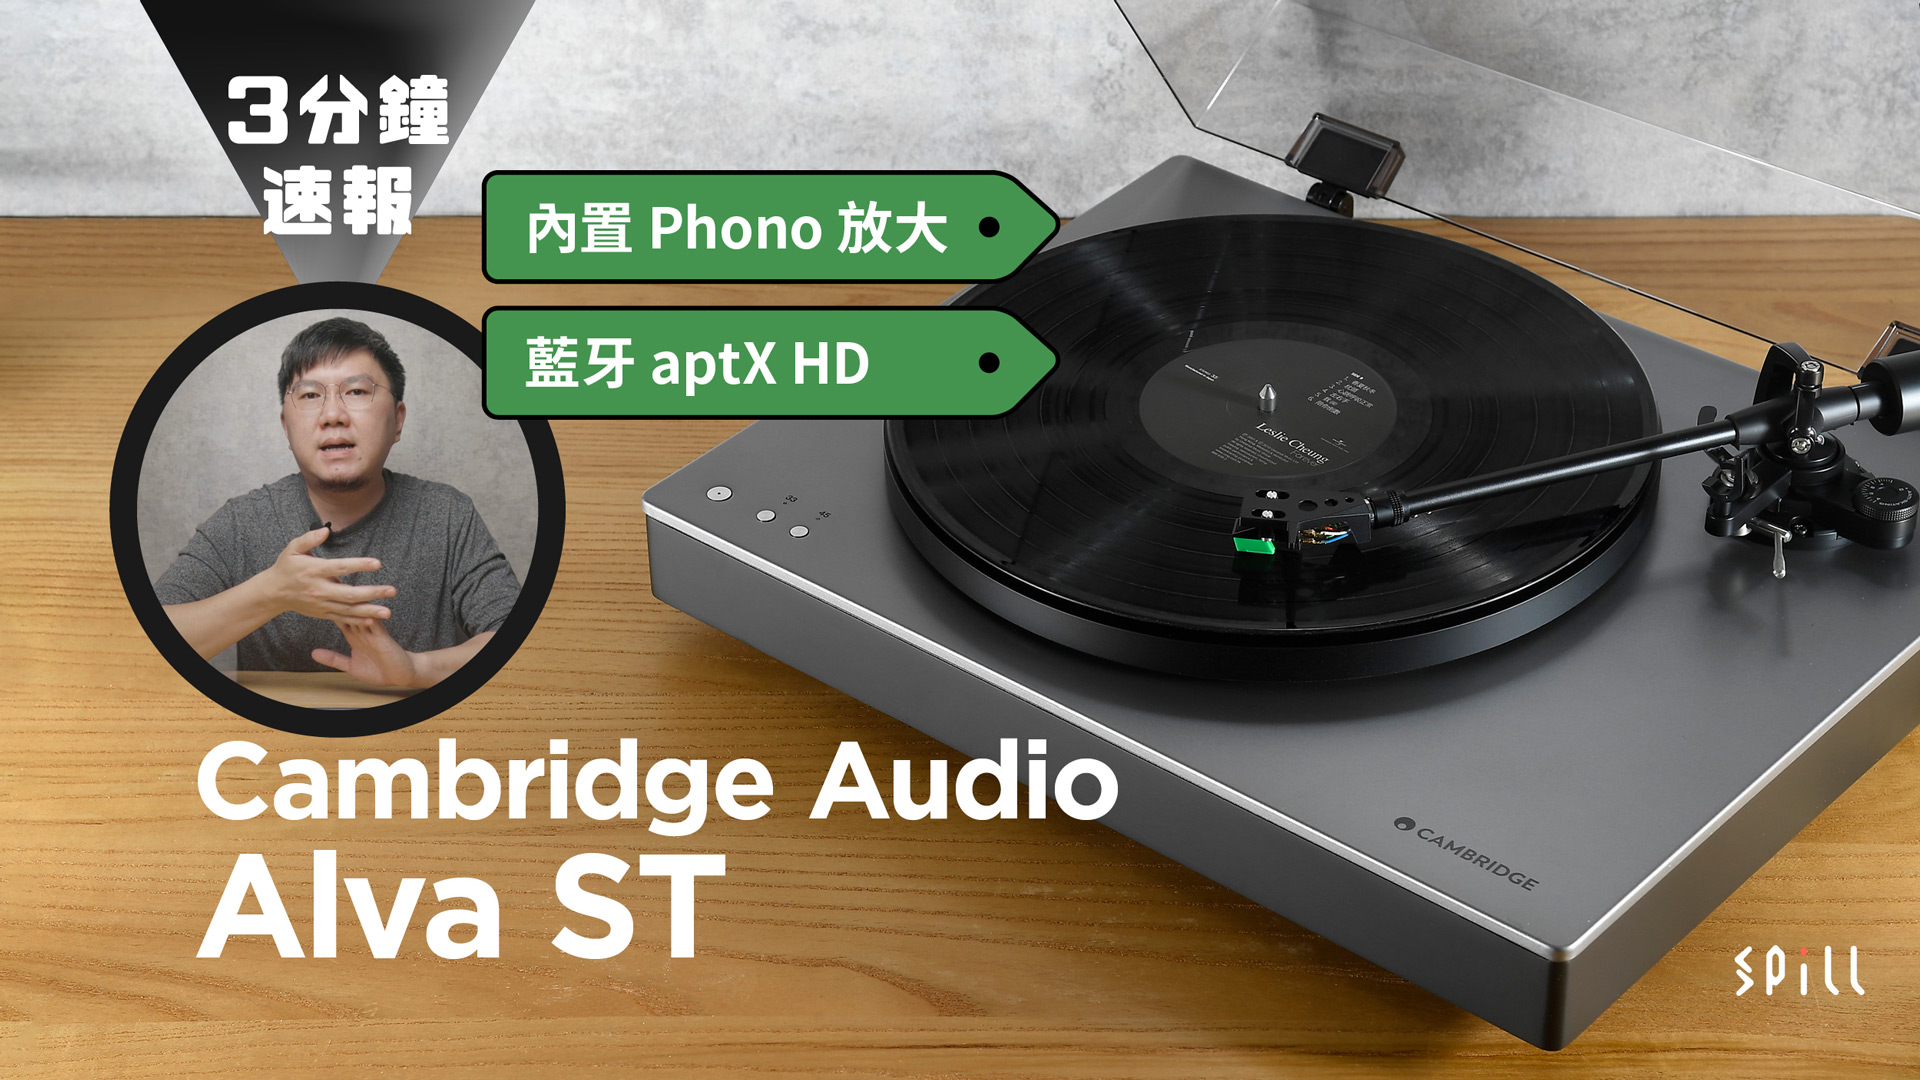 【3 分鐘速報】Cambridge Audio Alva ST：易用、靚聲又好玩！內置 Phono 放大、高音質藍牙 aptX HD 加持